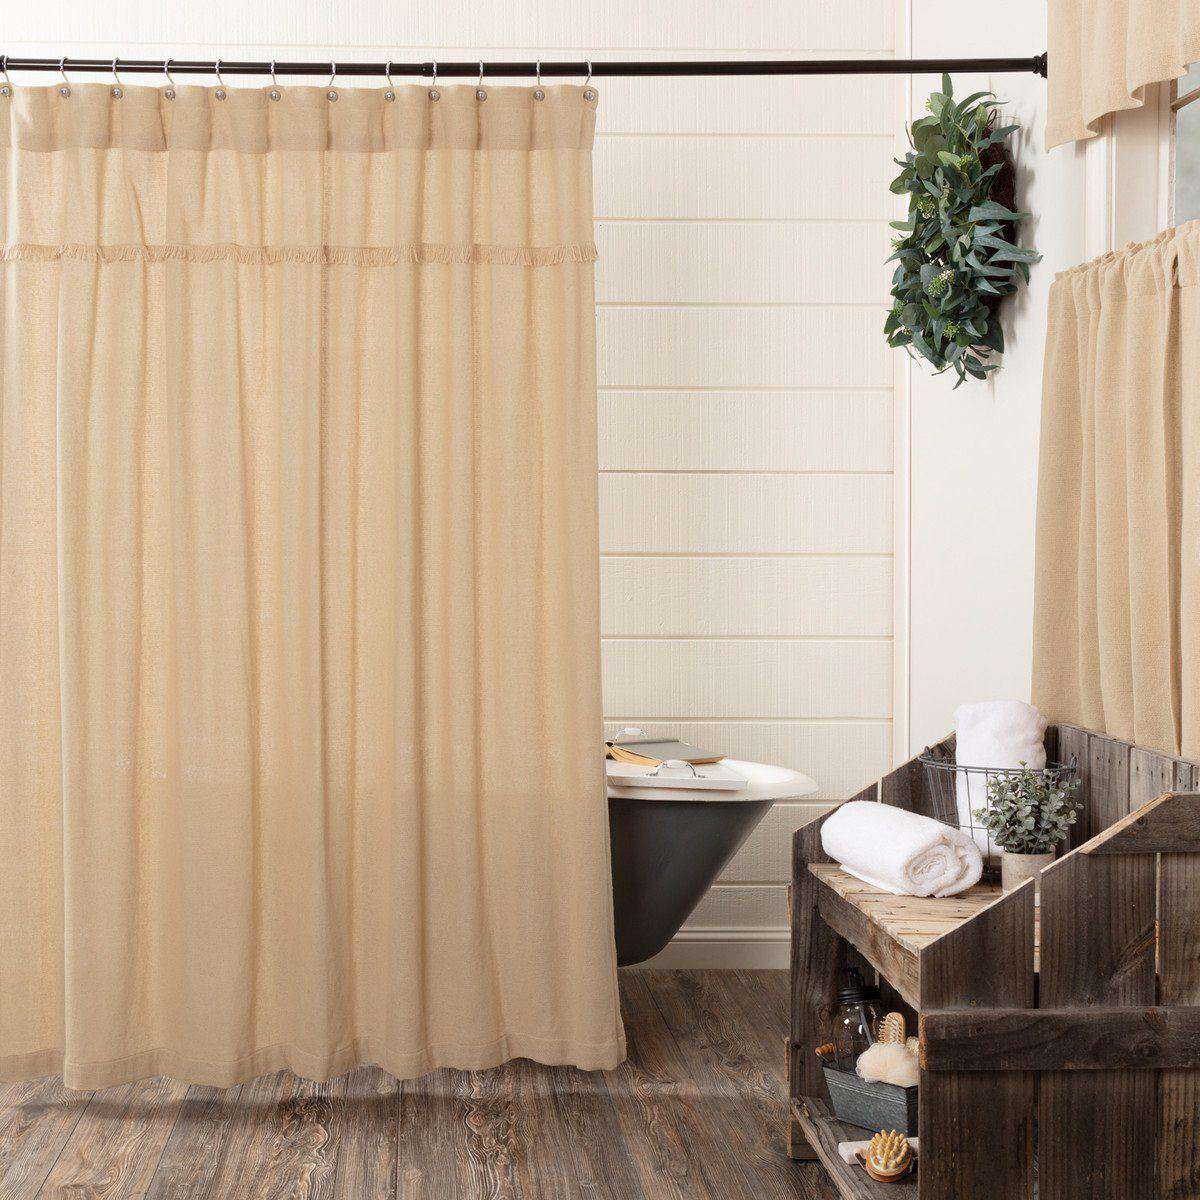 Burlap Vintage/Antique/Natural Shower Curtain 72"x72" curtain VHC Brands Vintage 